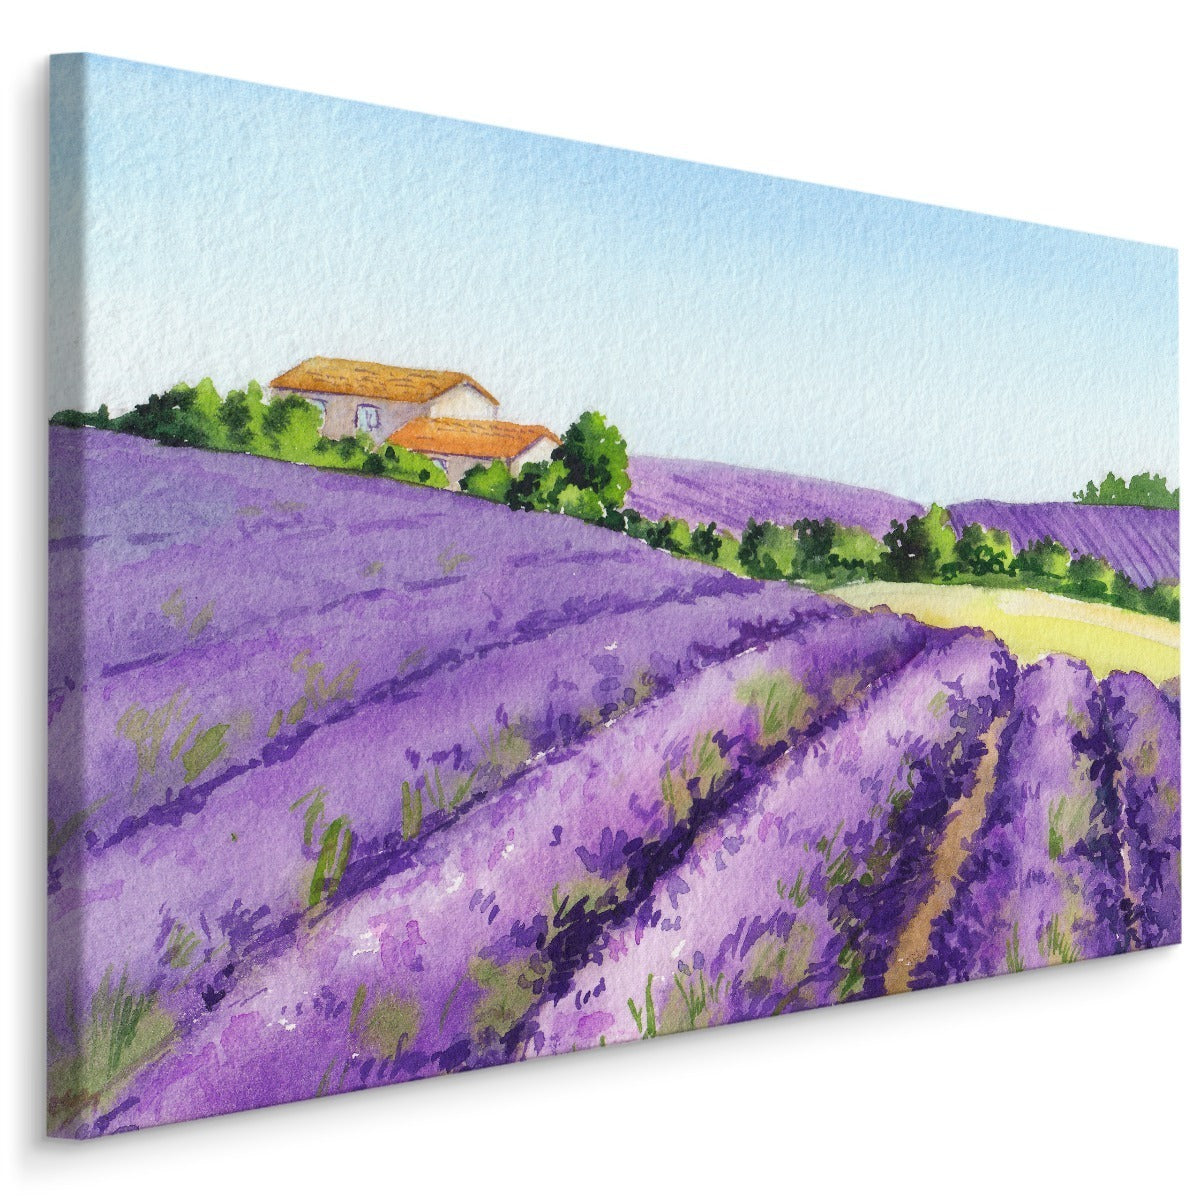 Lavendelfelt malt med akvarell